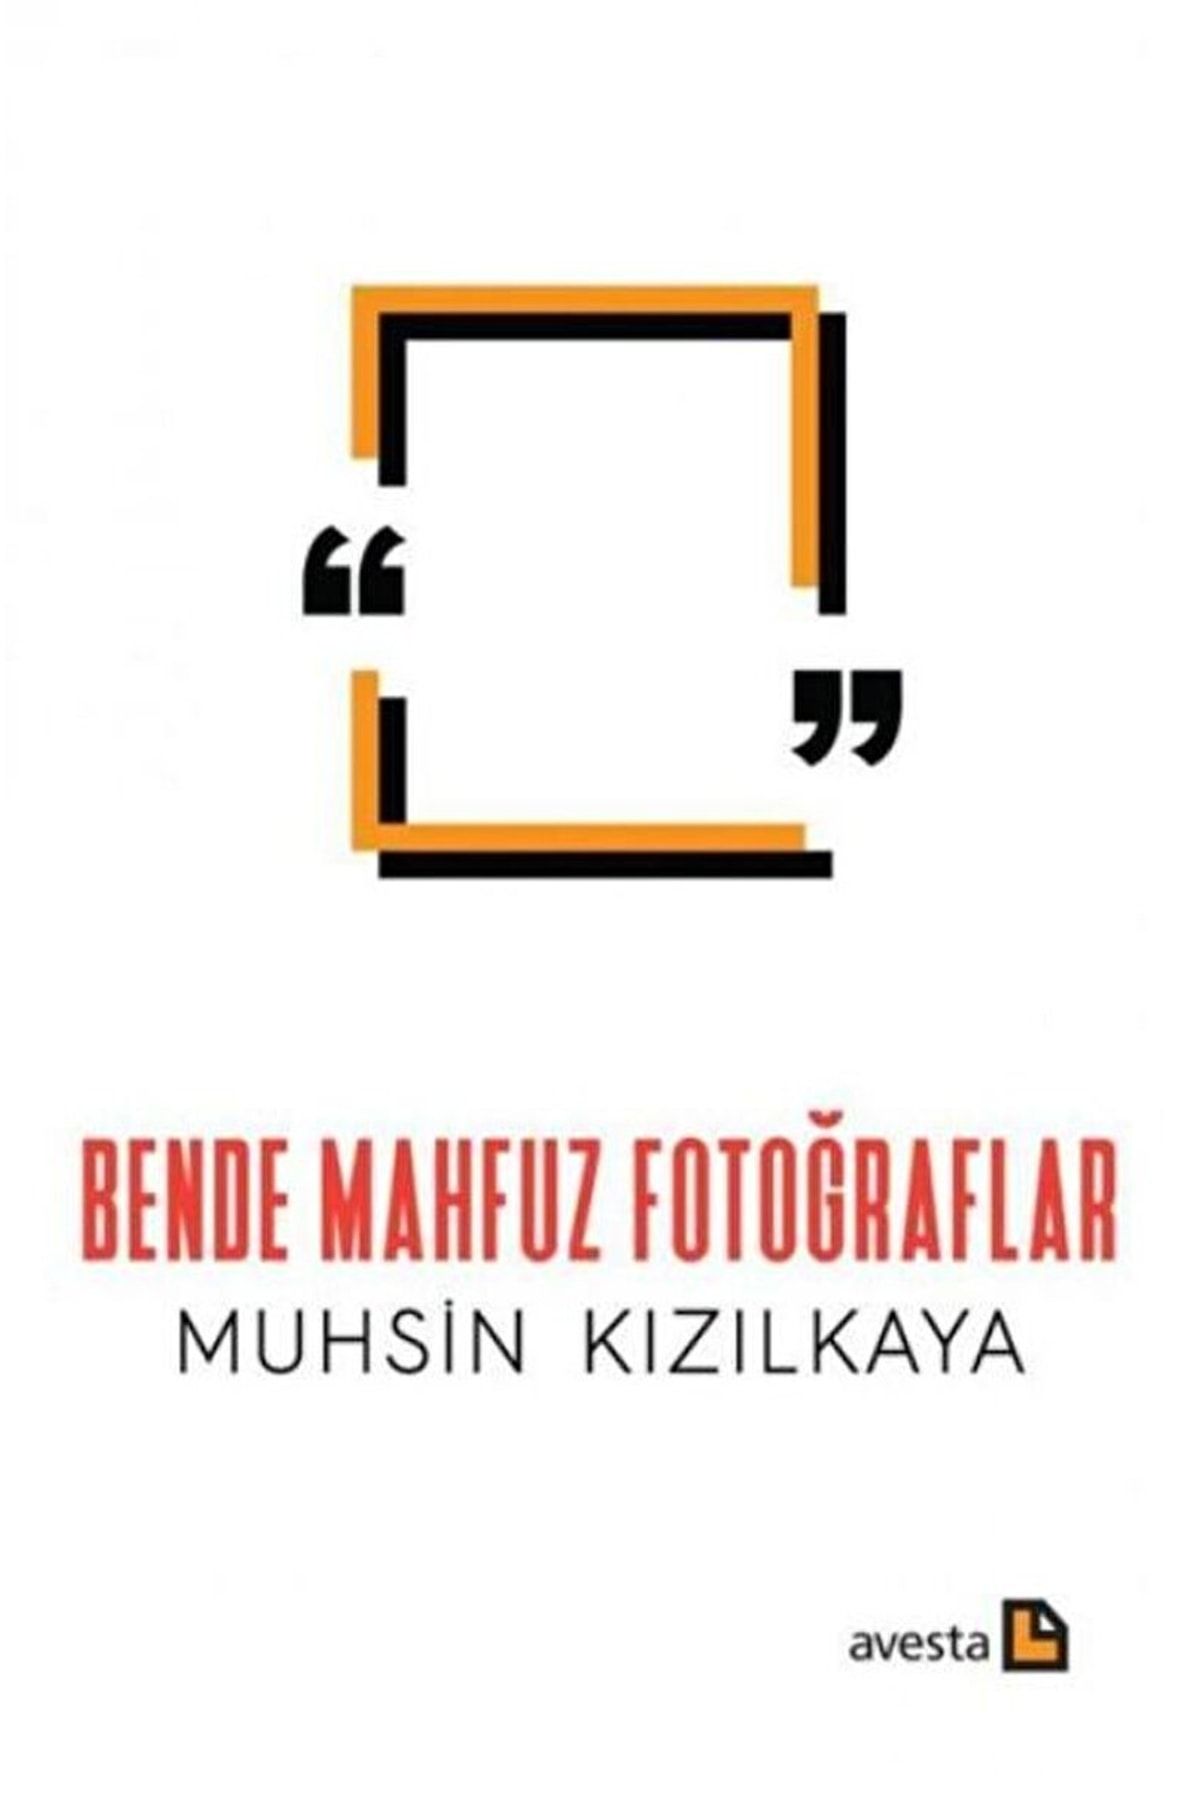 Avesta Yayınları Bende Mahfuz Fotoğraflar / Muhsin Kızılkaya / / 9786257253864